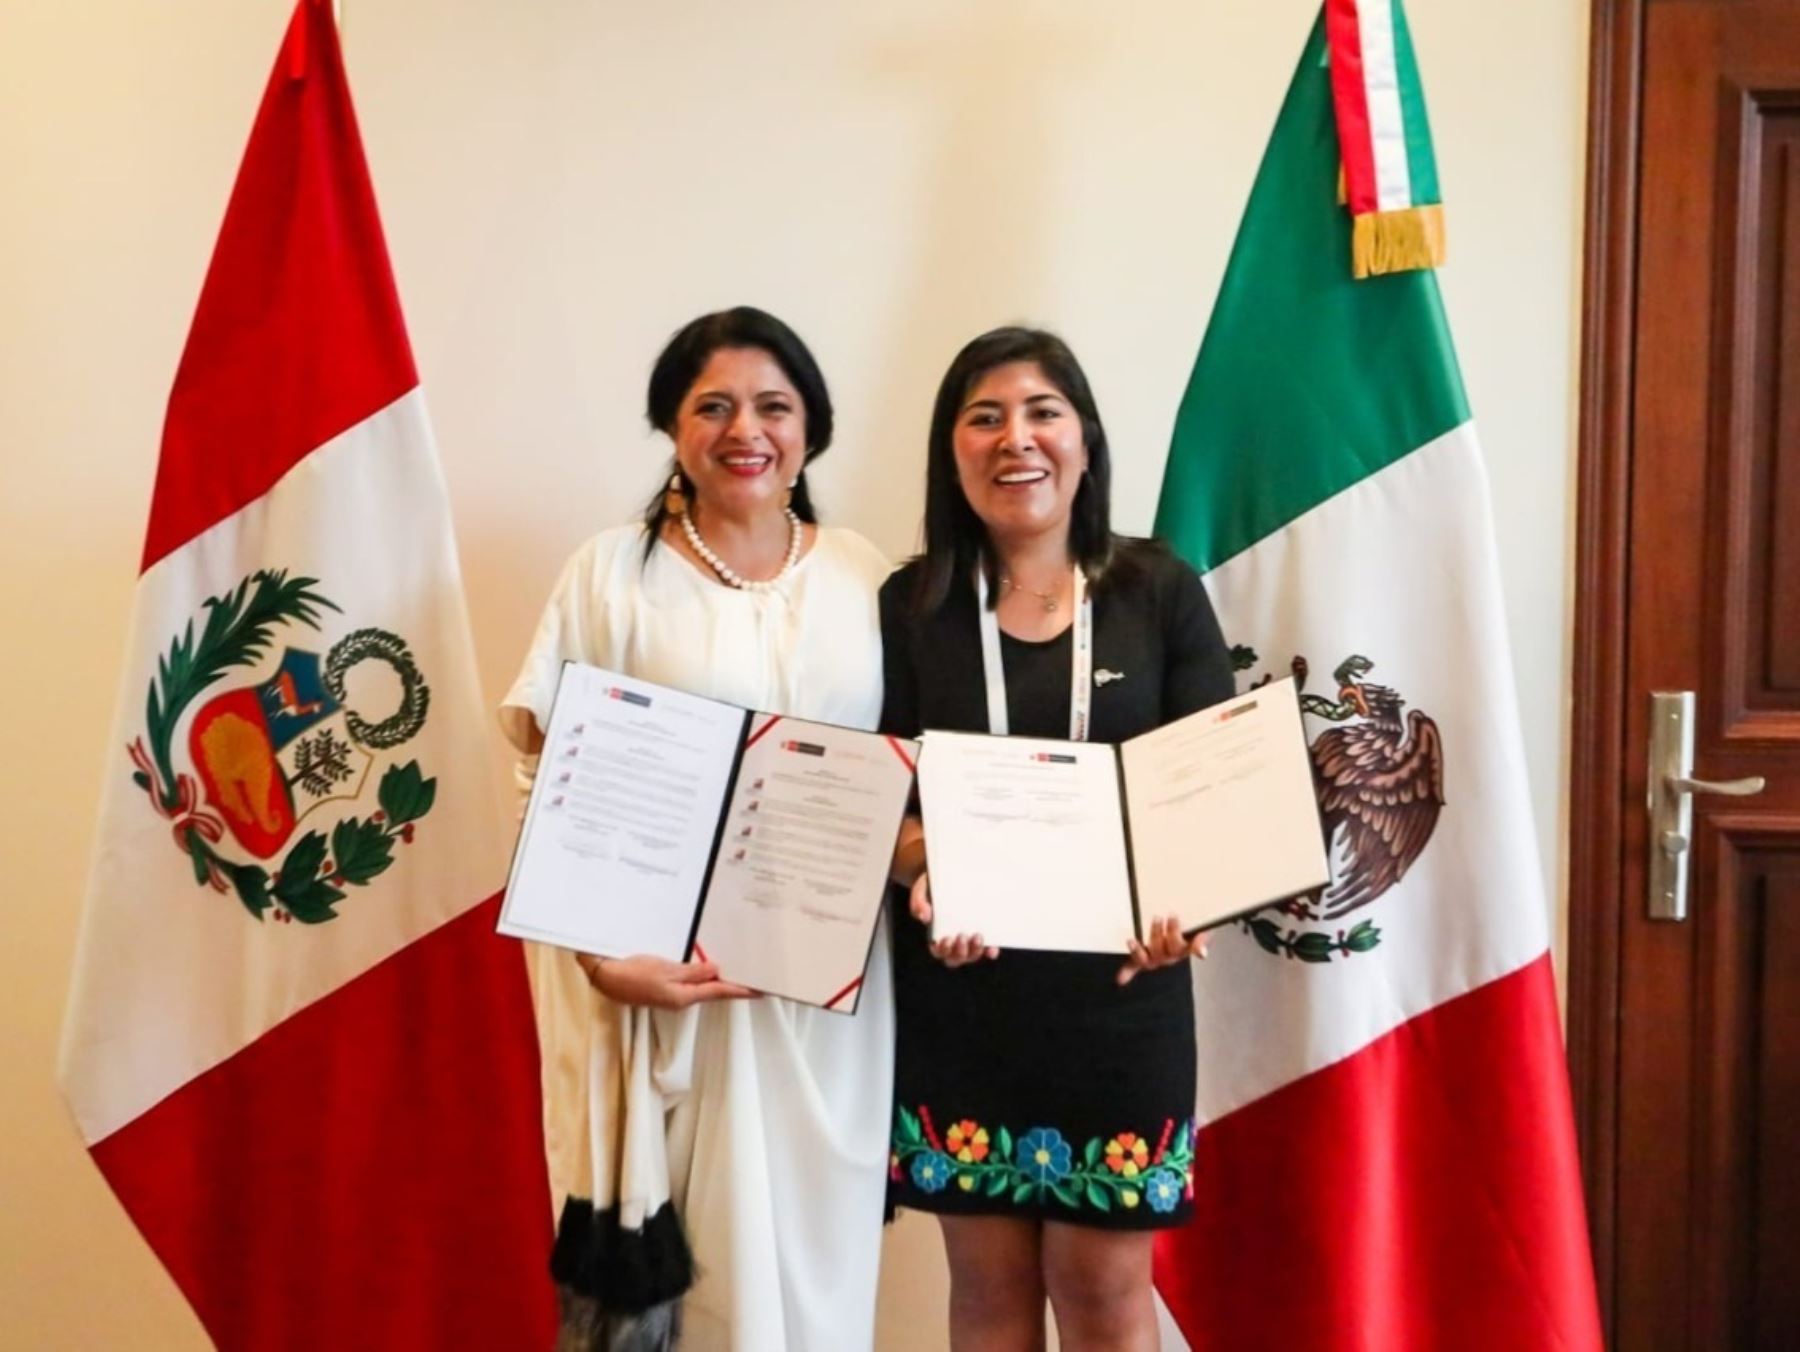 Perú y México firman convenio para implementar actividades para promover sus lenguas indígenas u originarias. Foto: ANDINA/difusión.